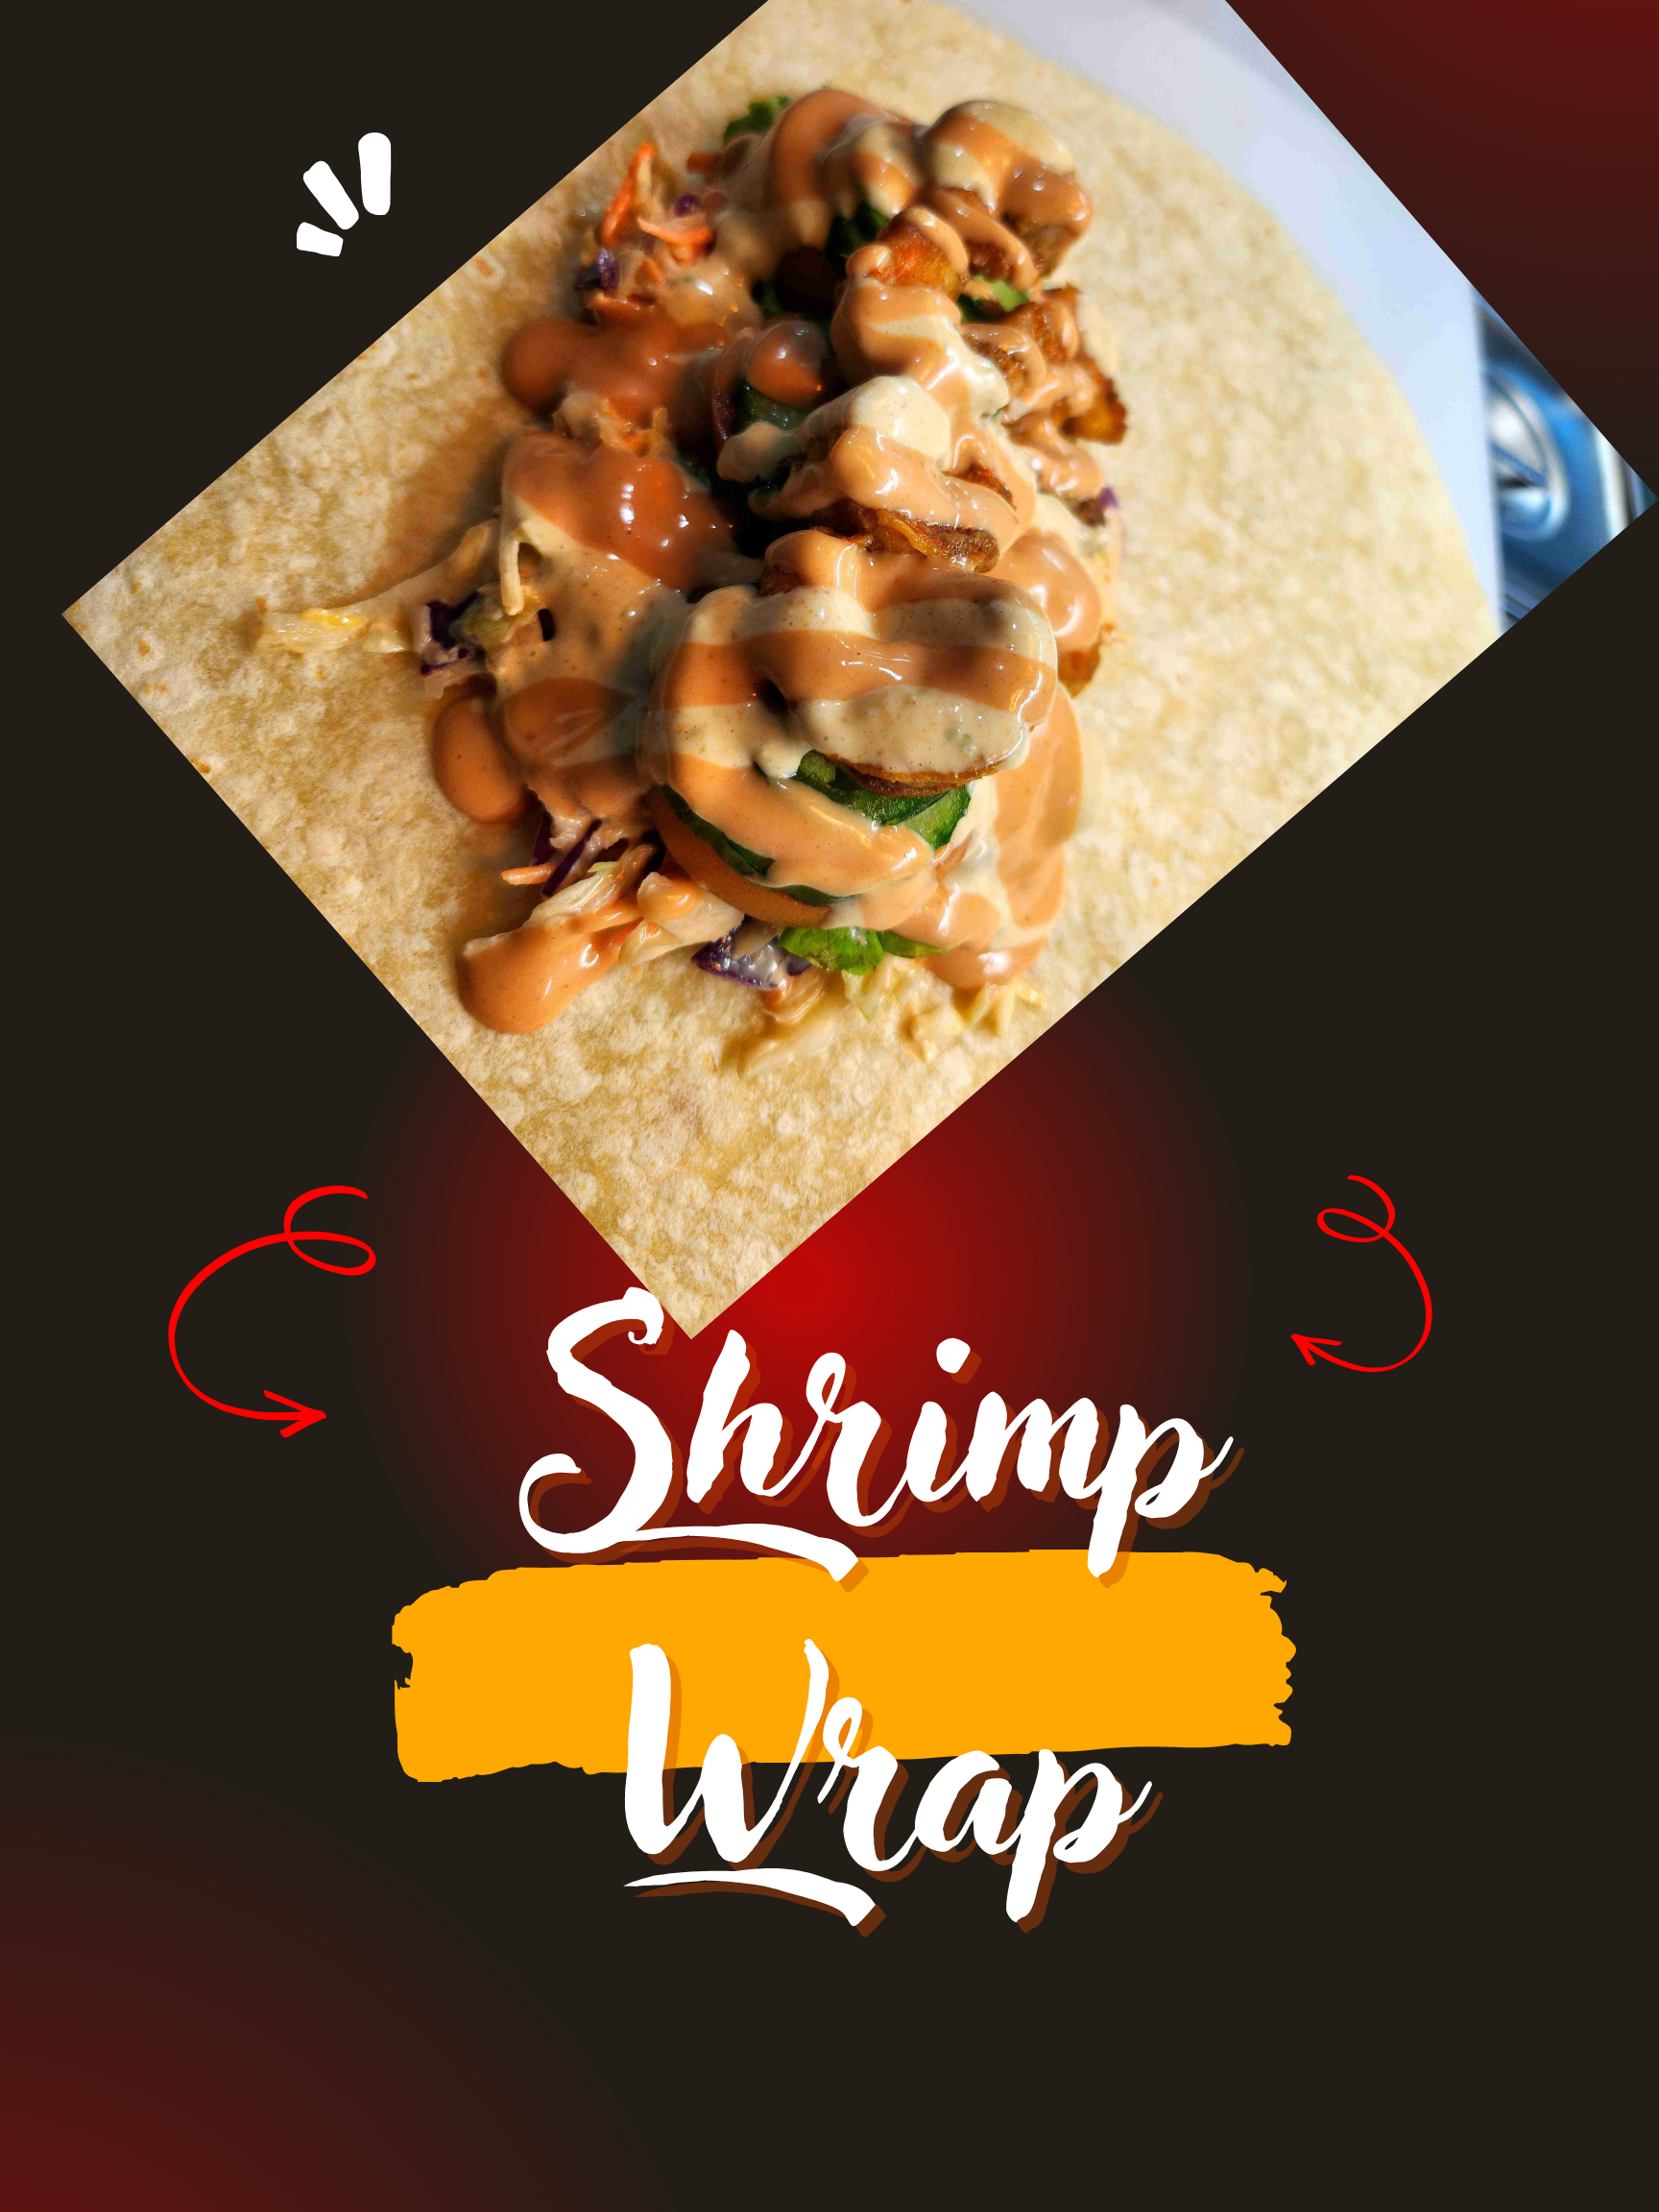 Shrimp wrap